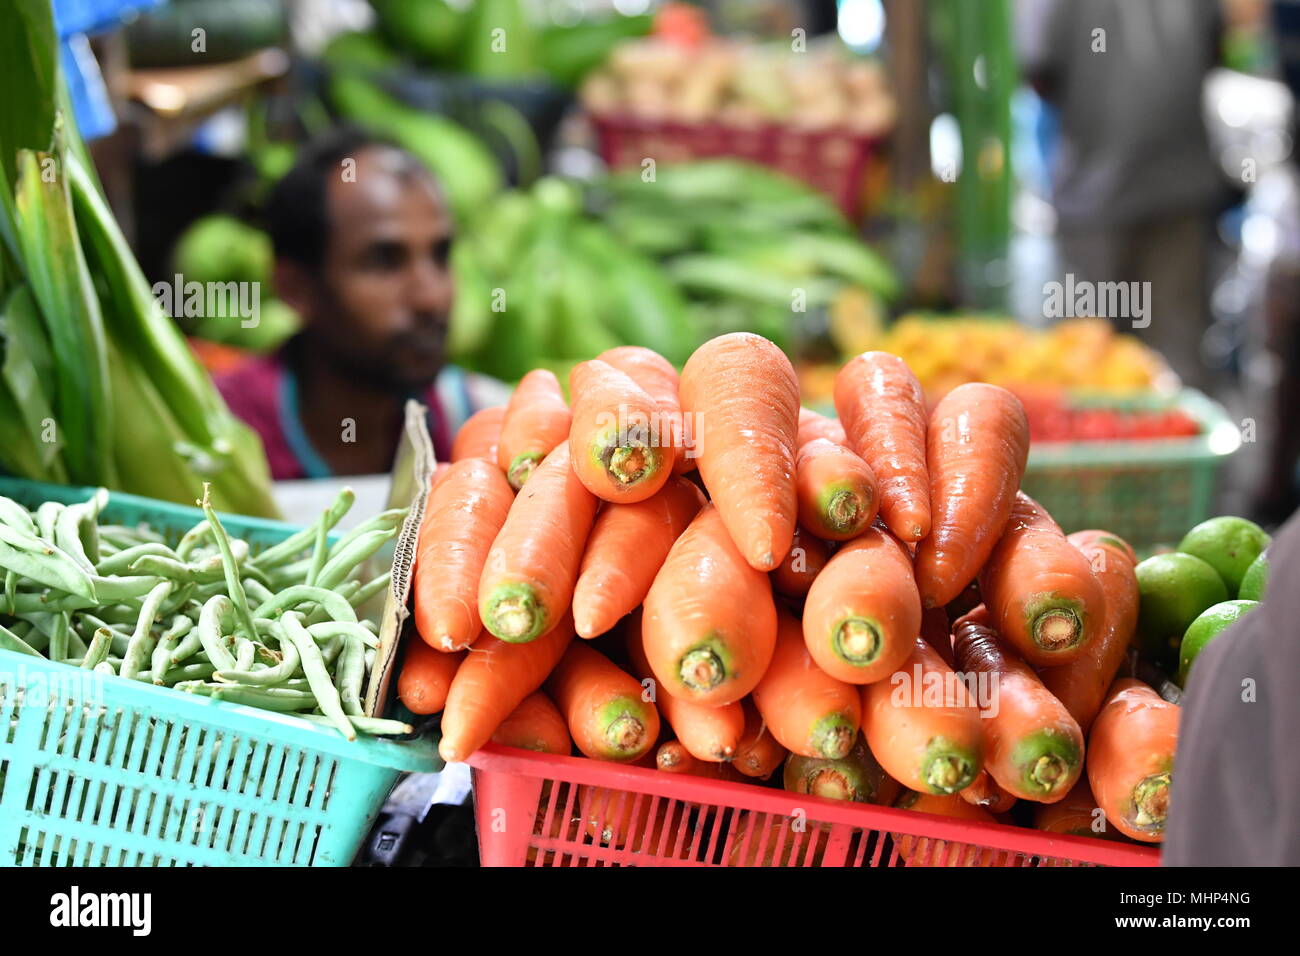 Maschio, Maldive - Marzo 4 2017 - persone che acquistano frutta e vegatbles al mercato dell'isola Foto Stock